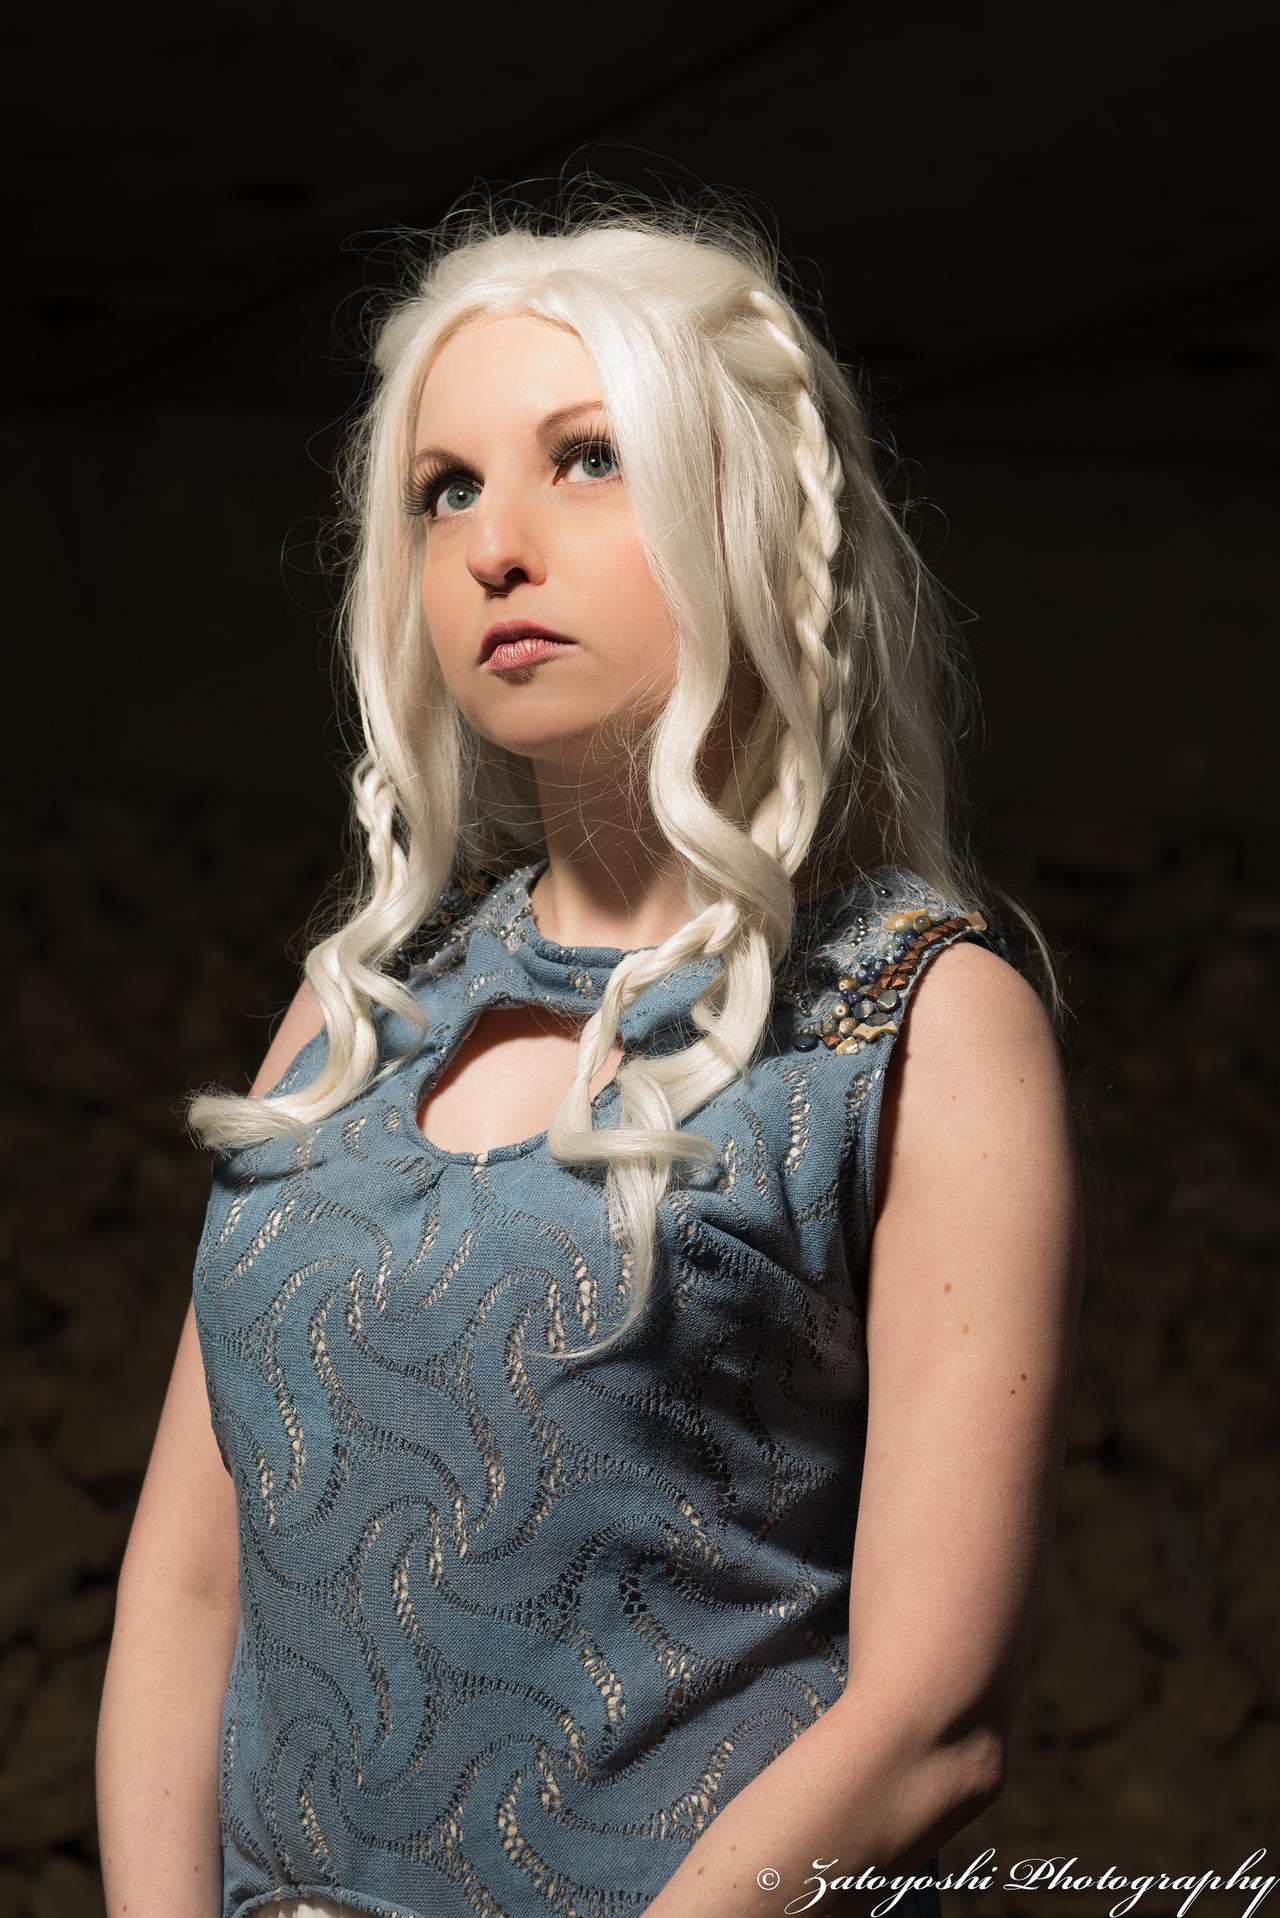 Lauren cosplays Daenerys from Game of Thrones